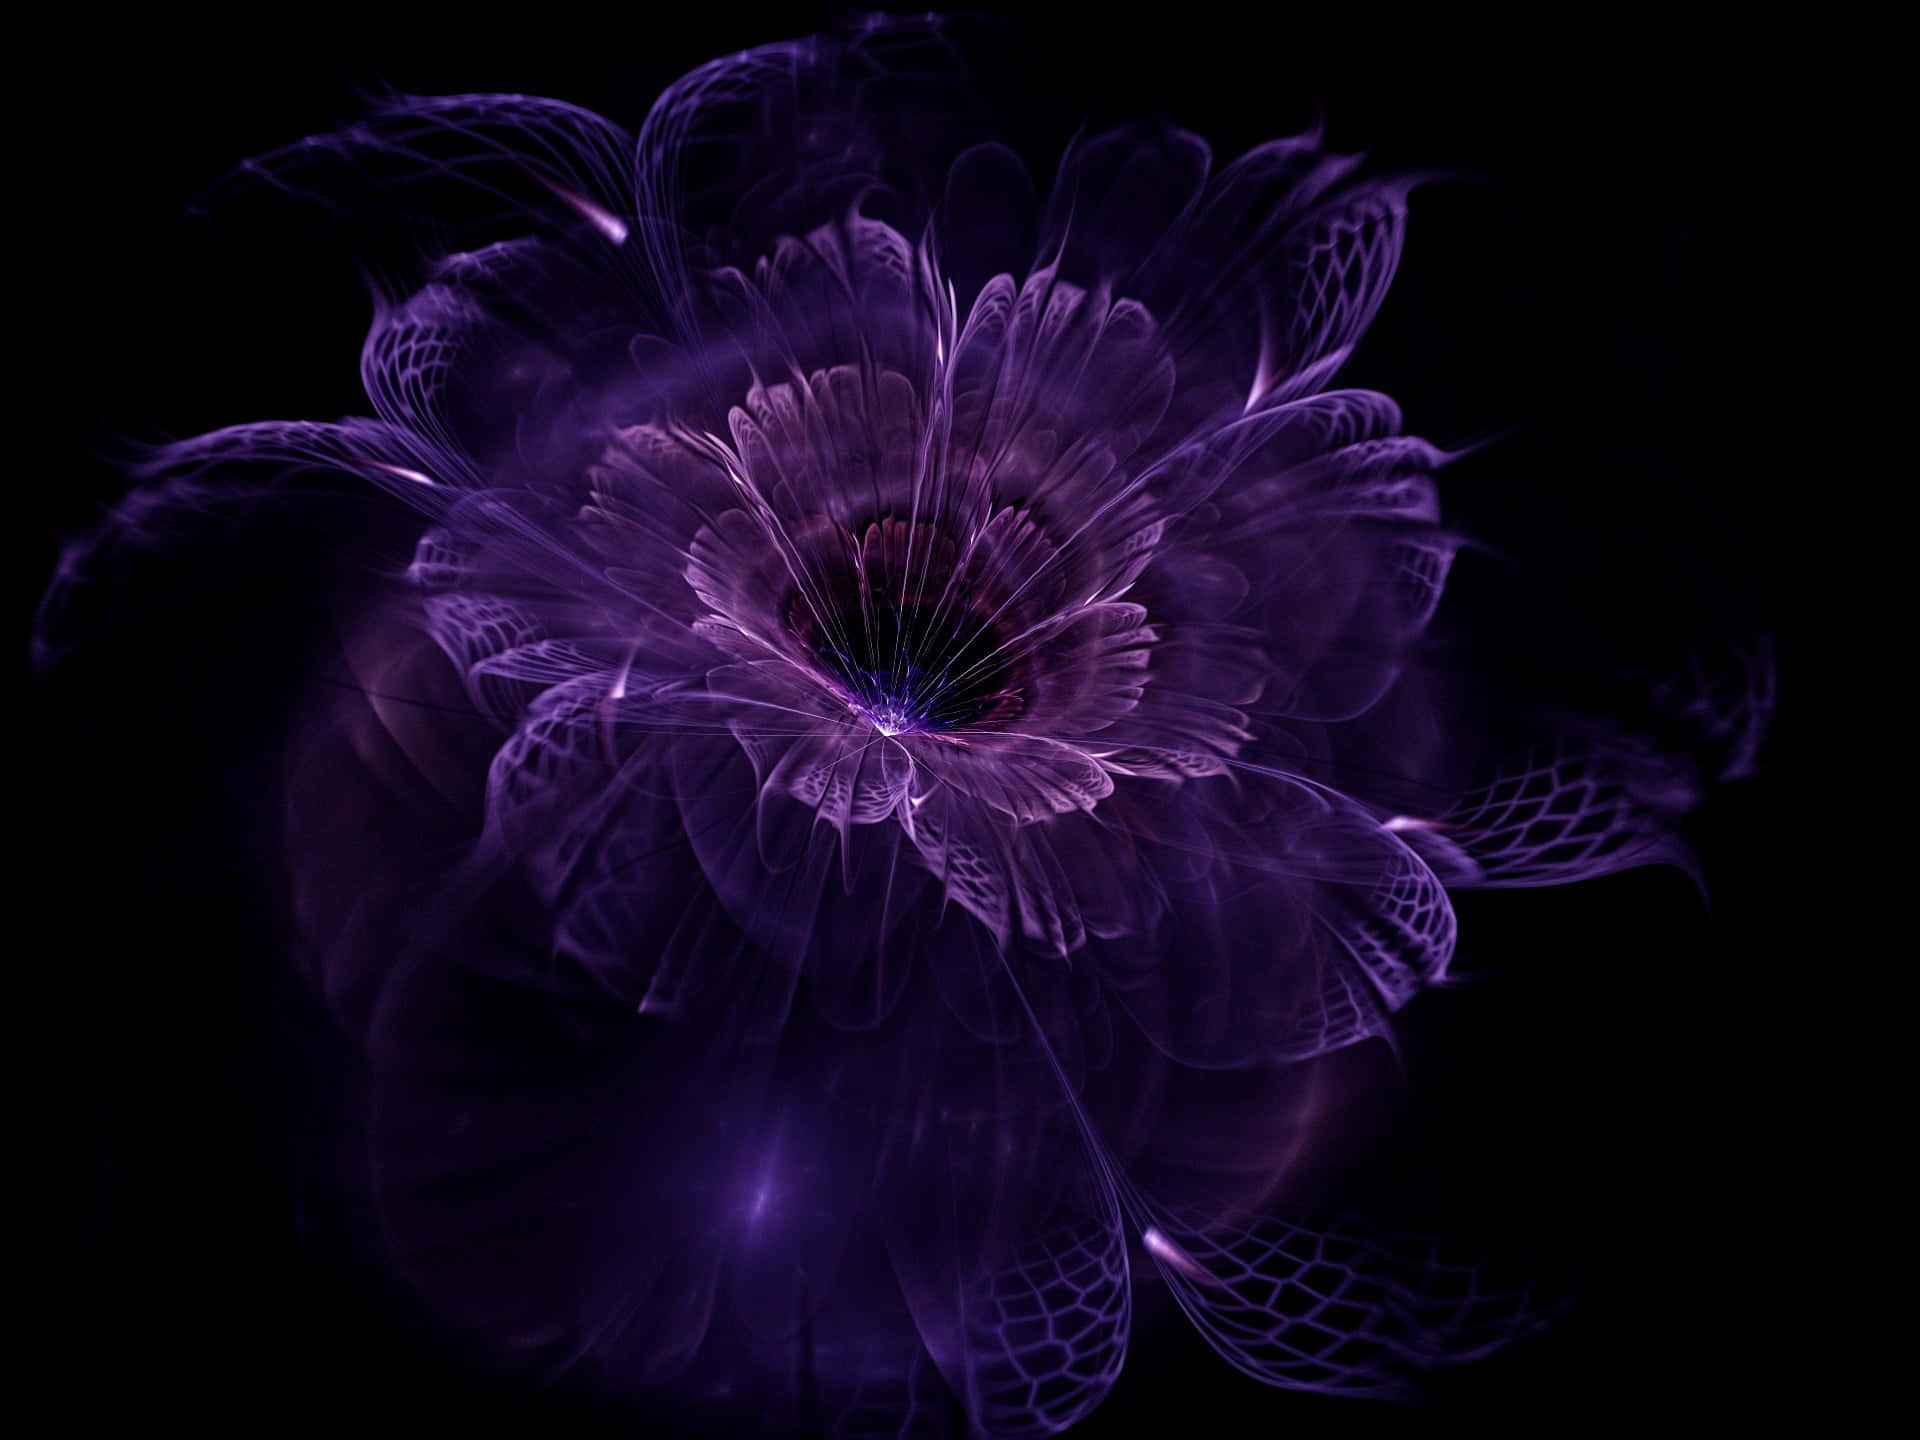 Enjoy the beauty of a purple flower in full bloom!